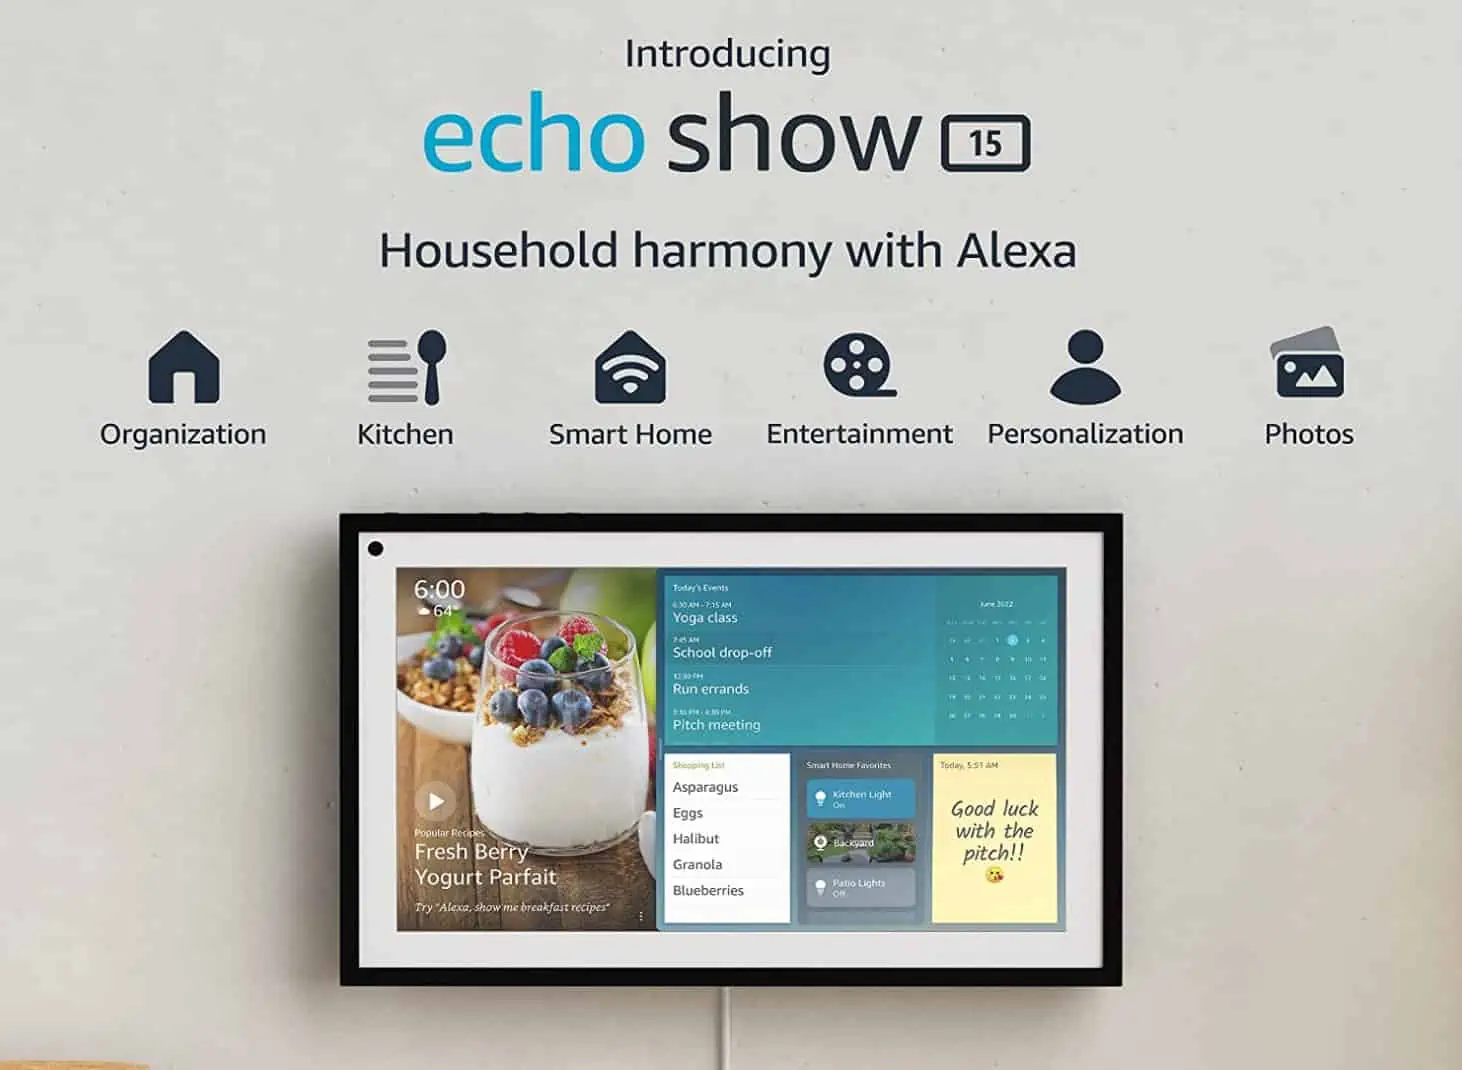 Az Amazon bejelentette az Echo Show 15-öt, egy 15 hüvelykes intelligens kijelzőt, amelyet Alexa hajt